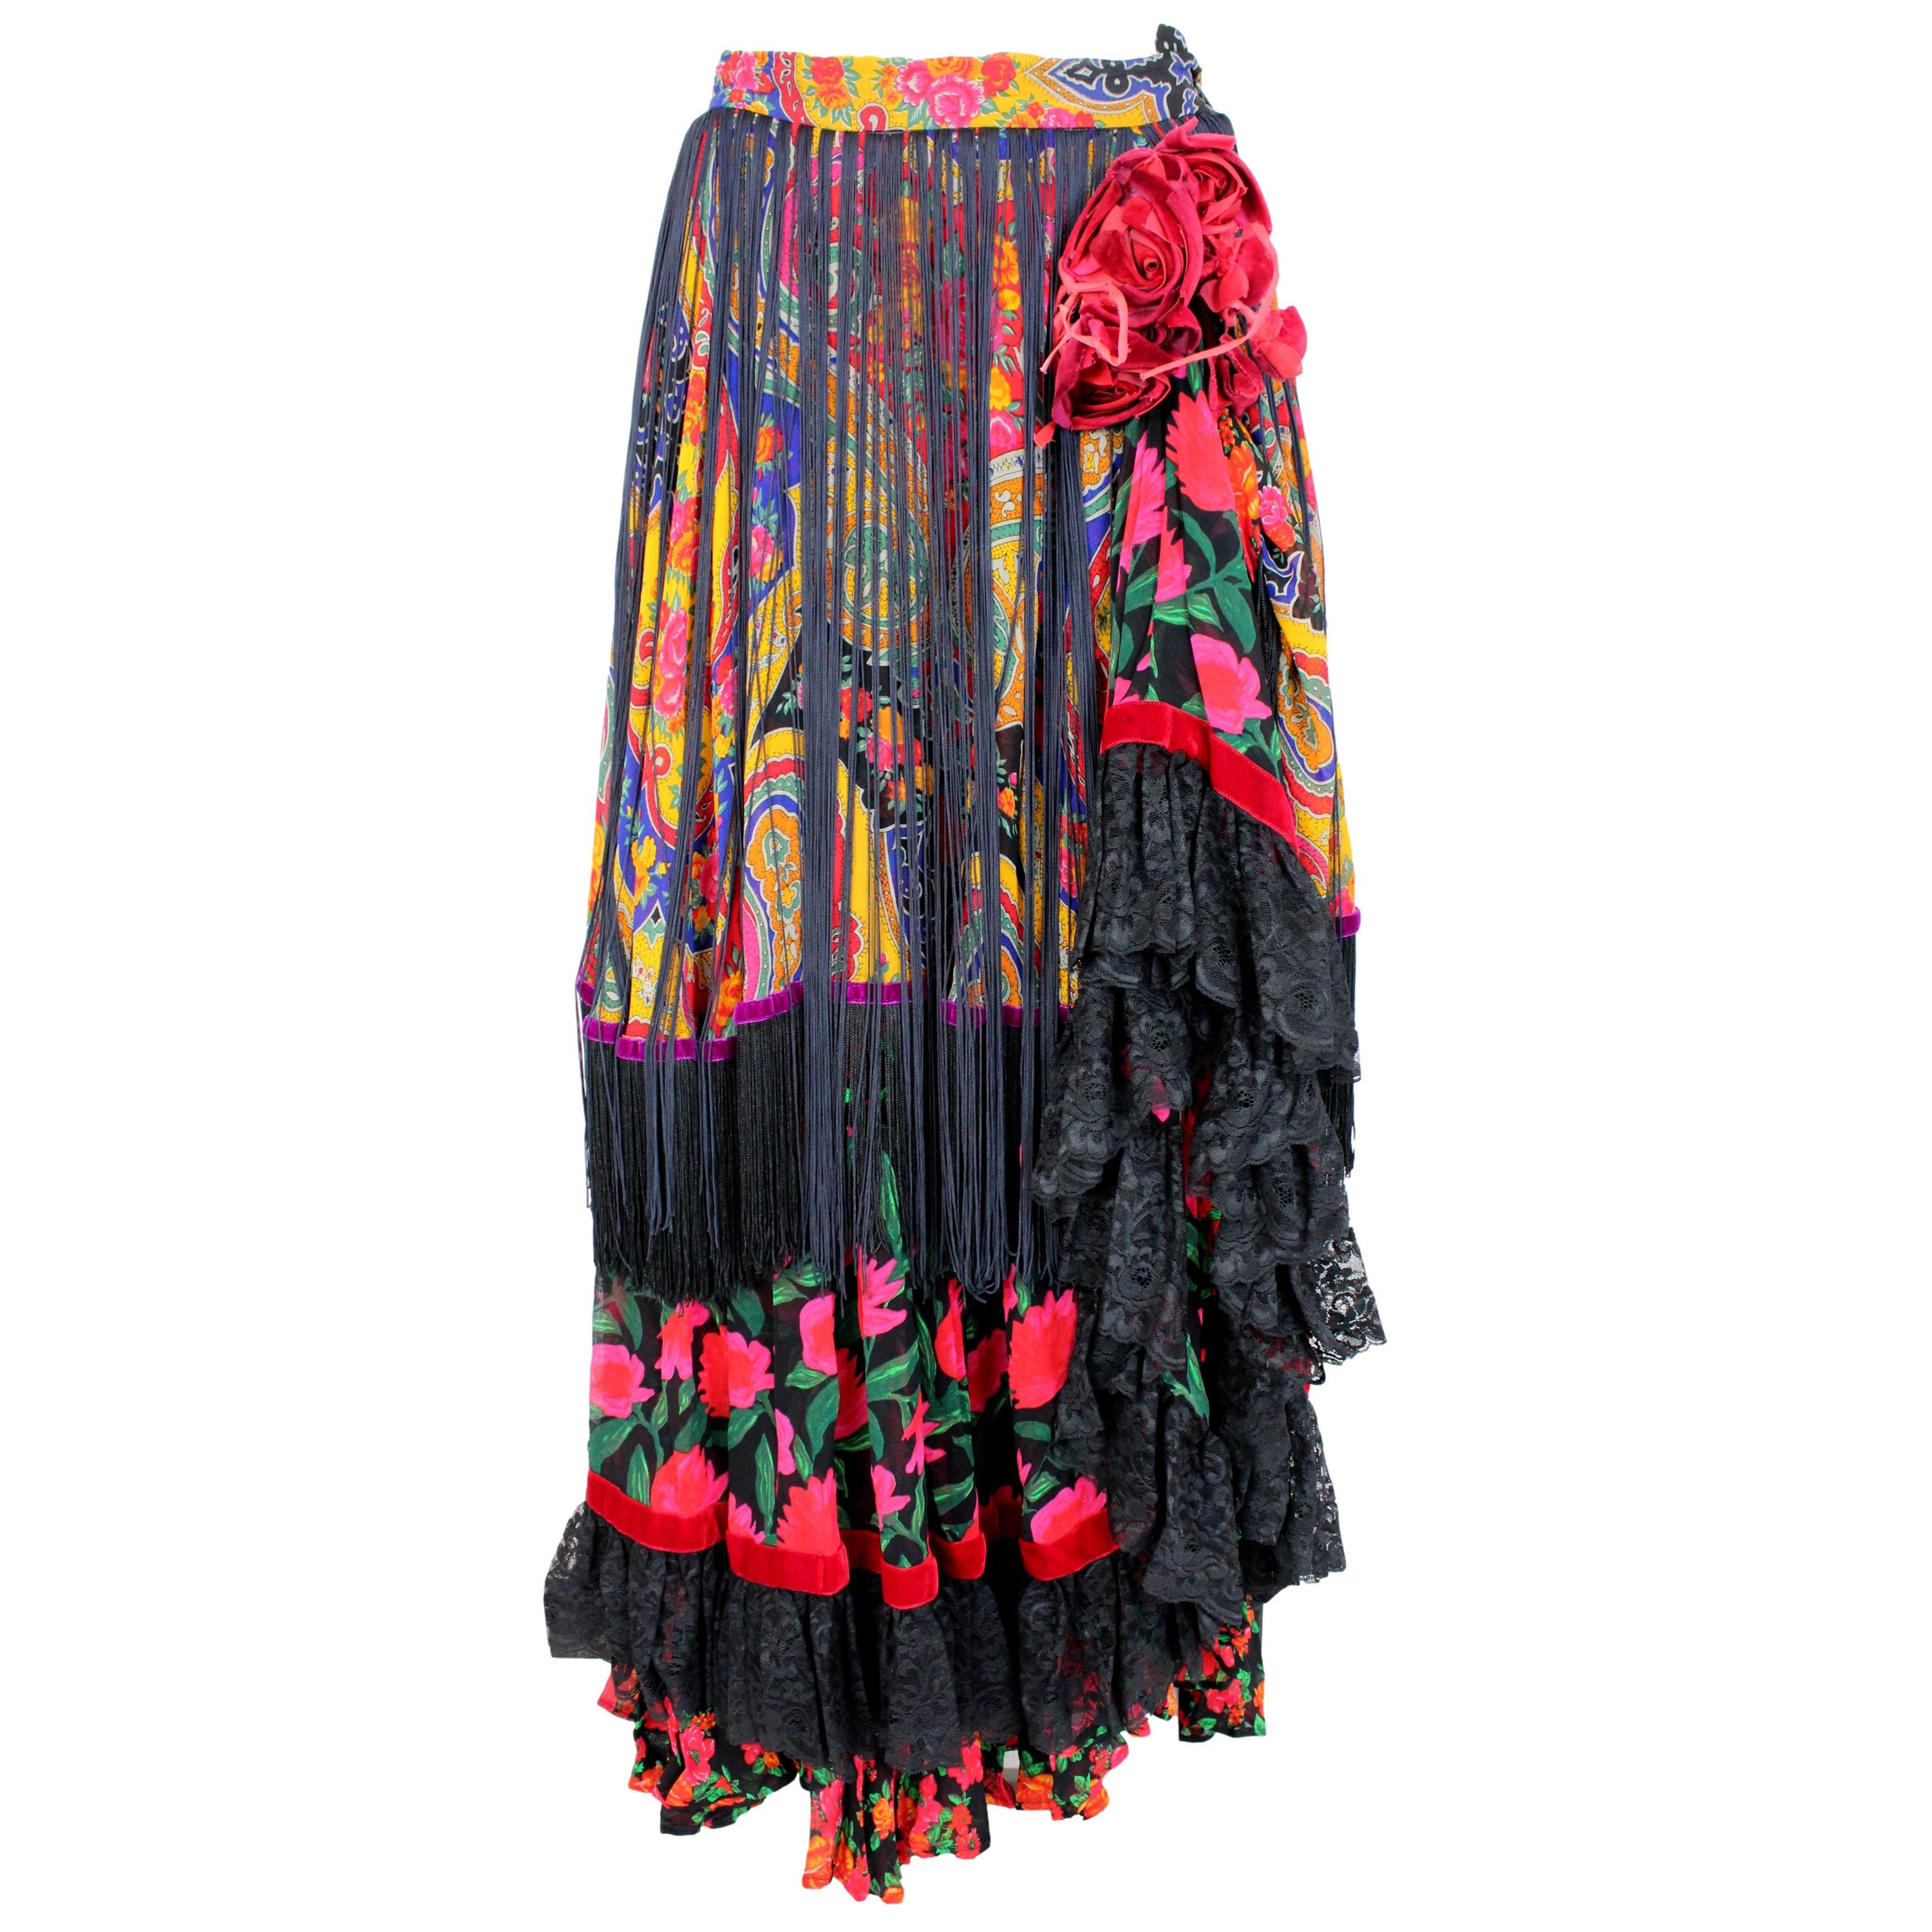 Il s'agit d'une exquise jupe Dolce & Gabbana de la collection haute couture des années 2000. La jupe est confectionnée en tulle délicat et présente un imprimé floral, des franges et des détails en dentelle. Les couleurs de l'imprimé floral sont